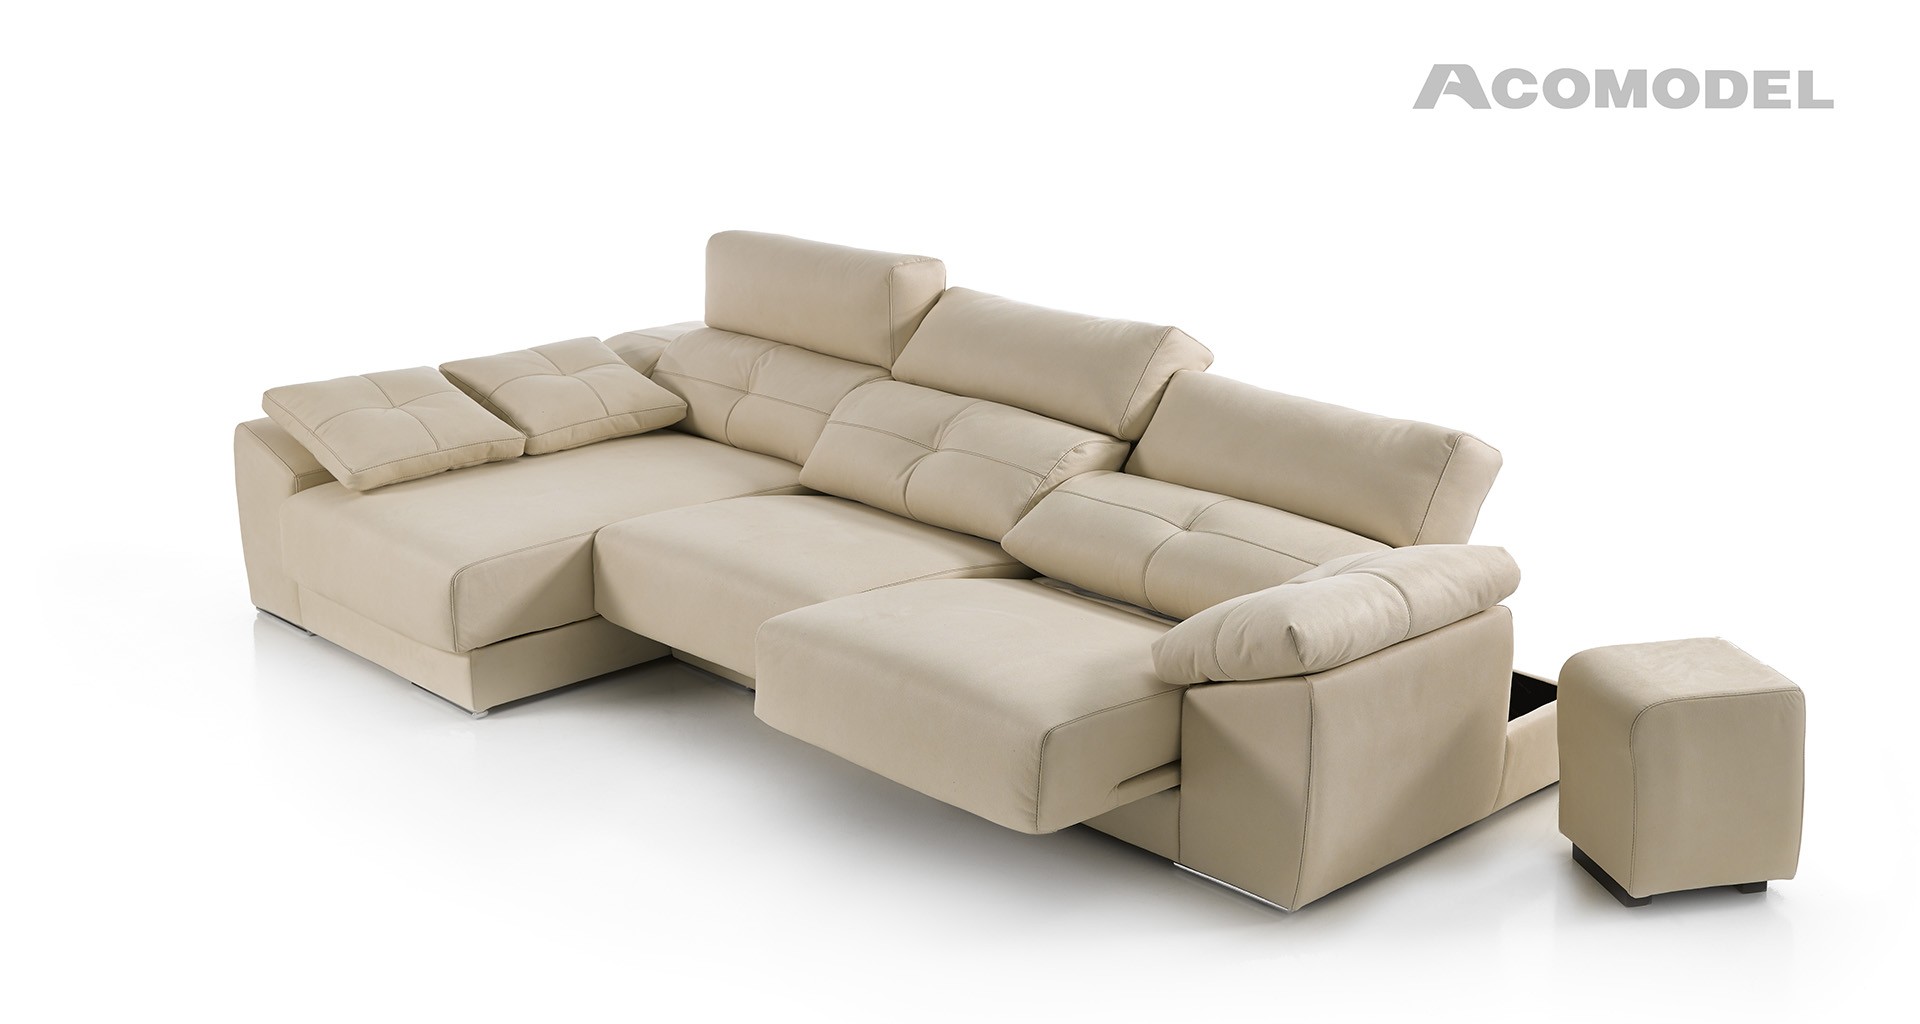 Sofa acomodel Atenza